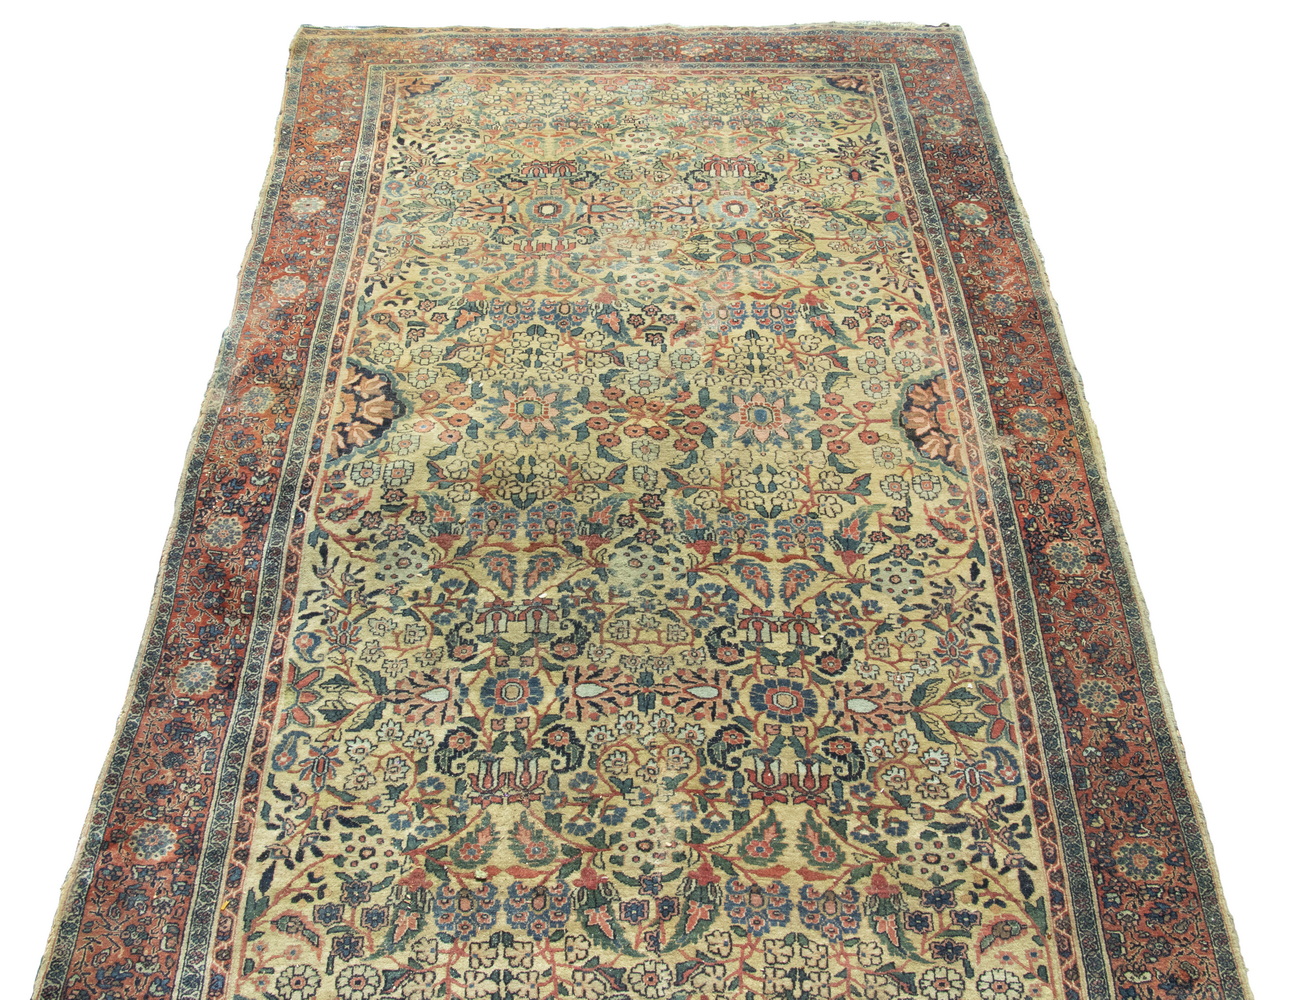 SAROUK CARPET (6 X 103) Sarouk carpet,